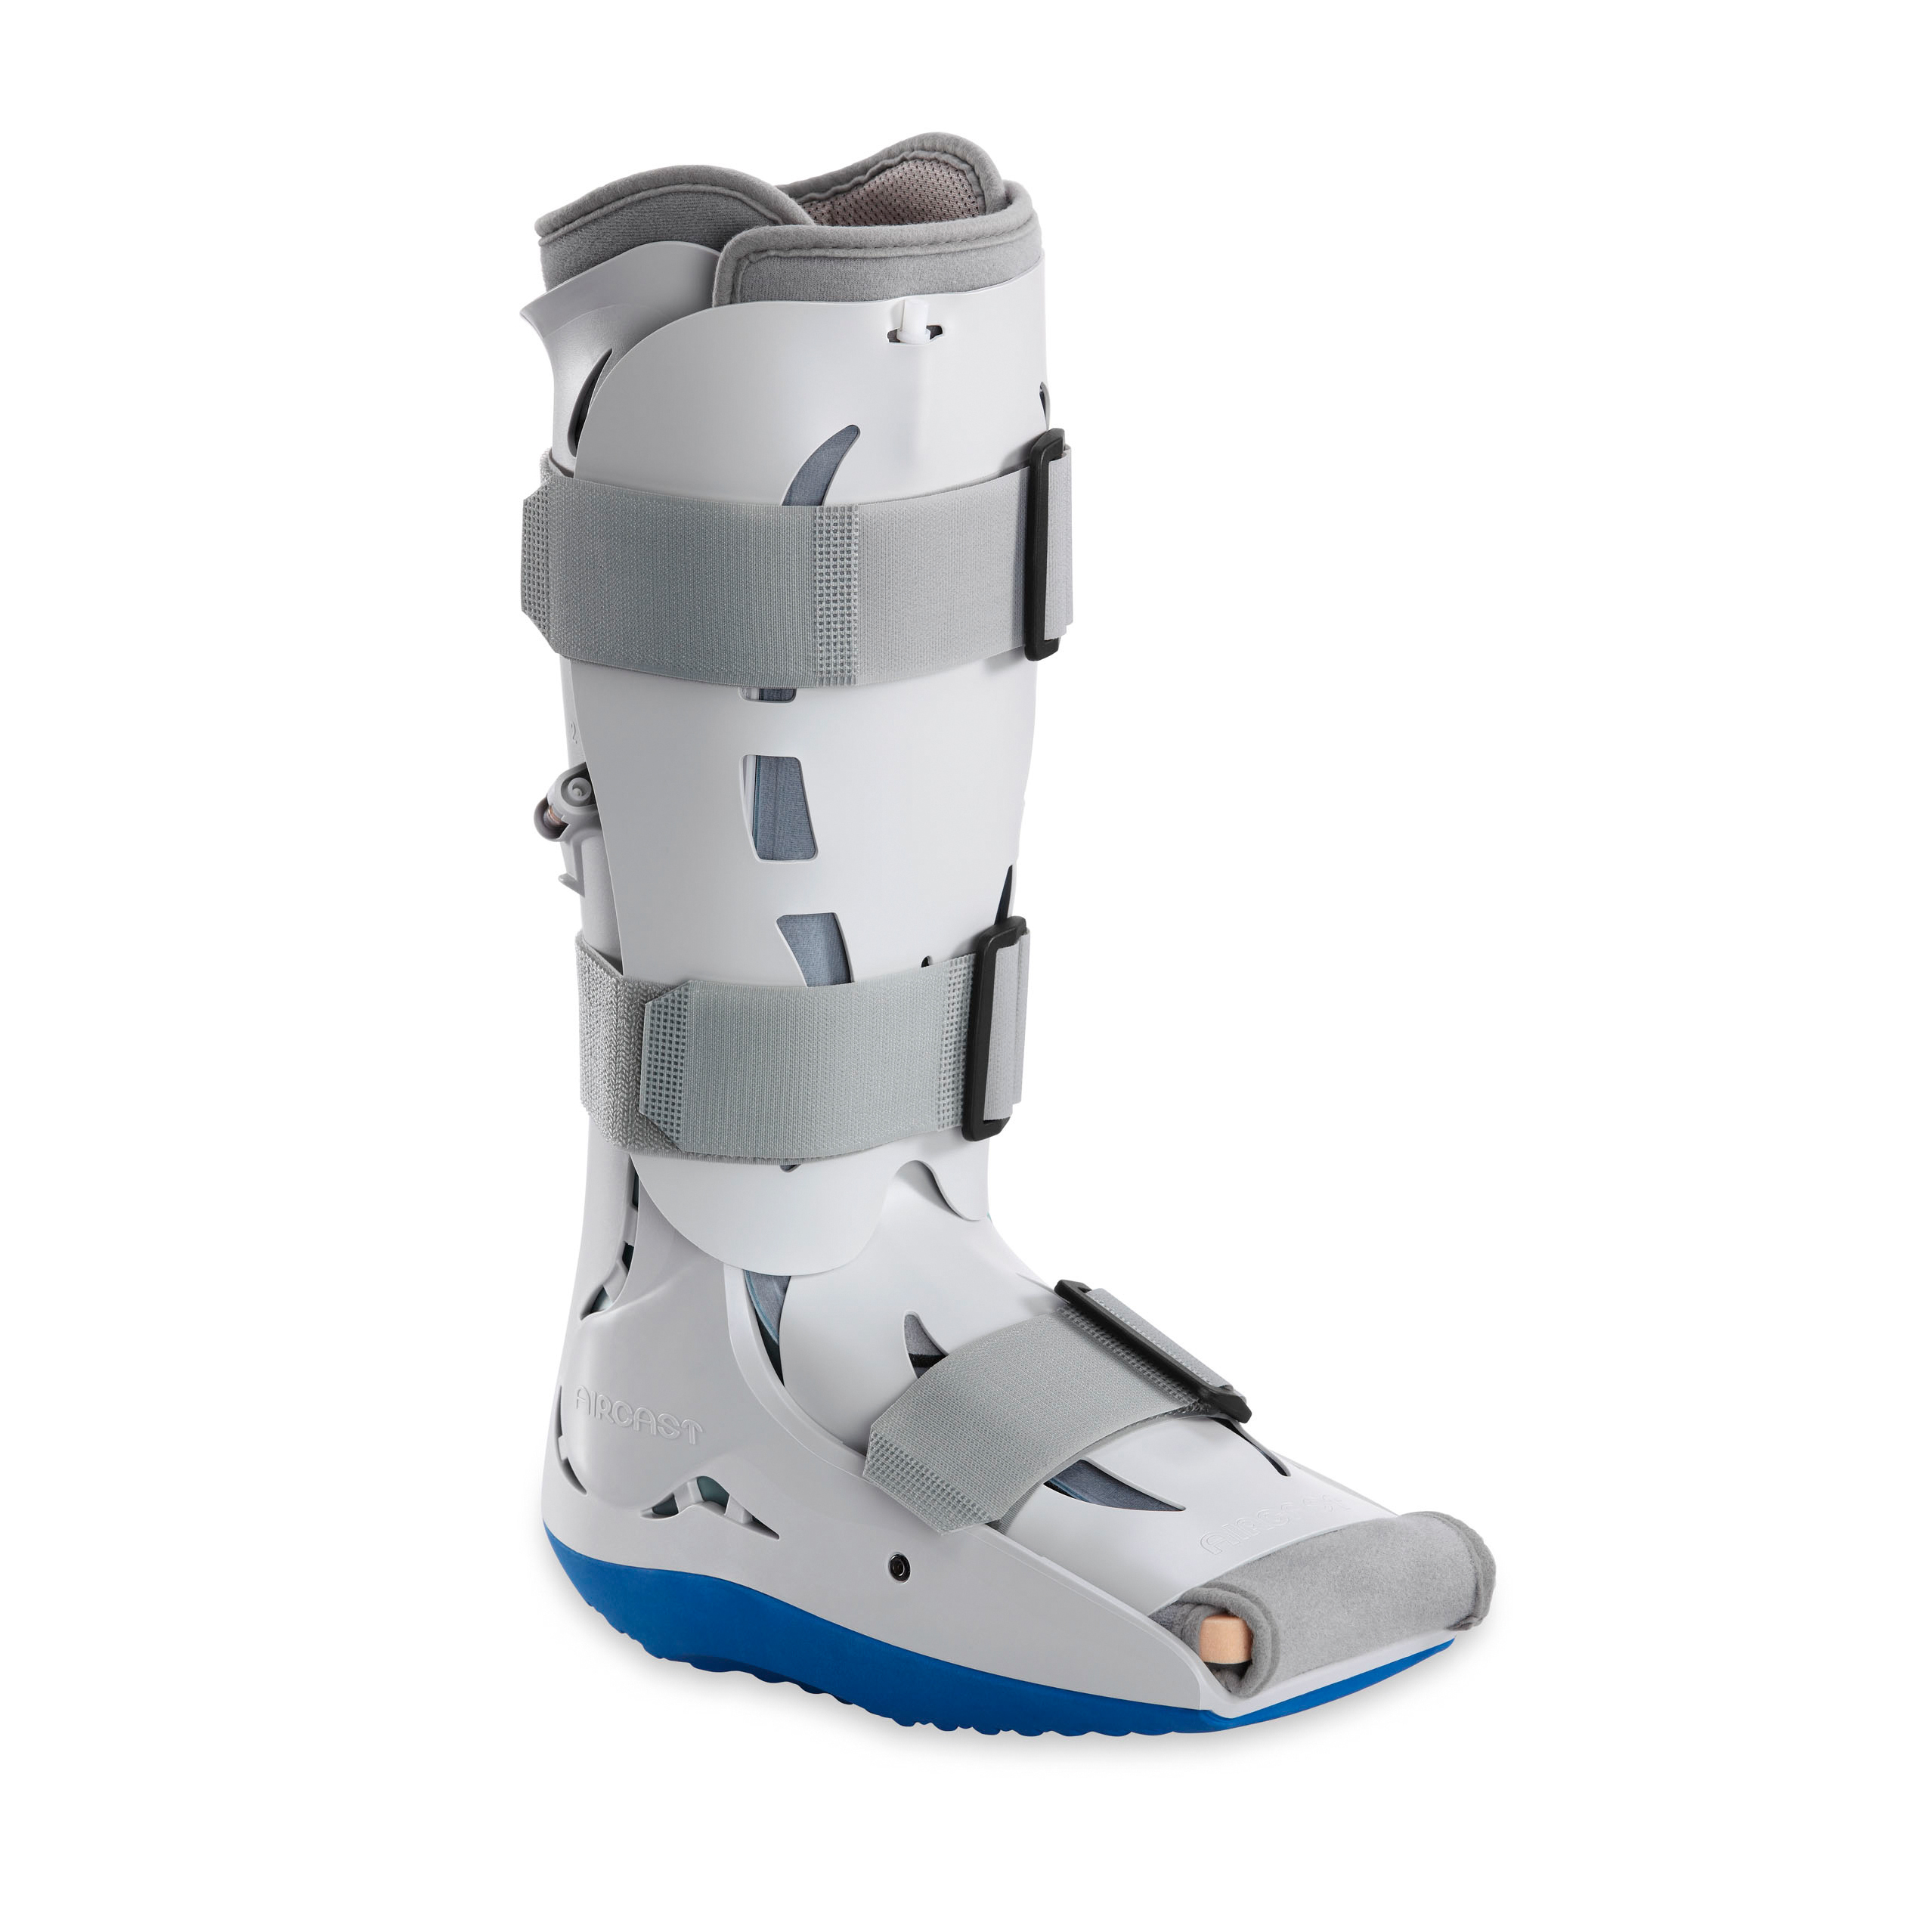 AIRCAST® Diabetic Pneumatic Walker™ Produktbild, Unterschenkel-Fuß-Orthese zur Immobilisierung in vorgegebener
Position